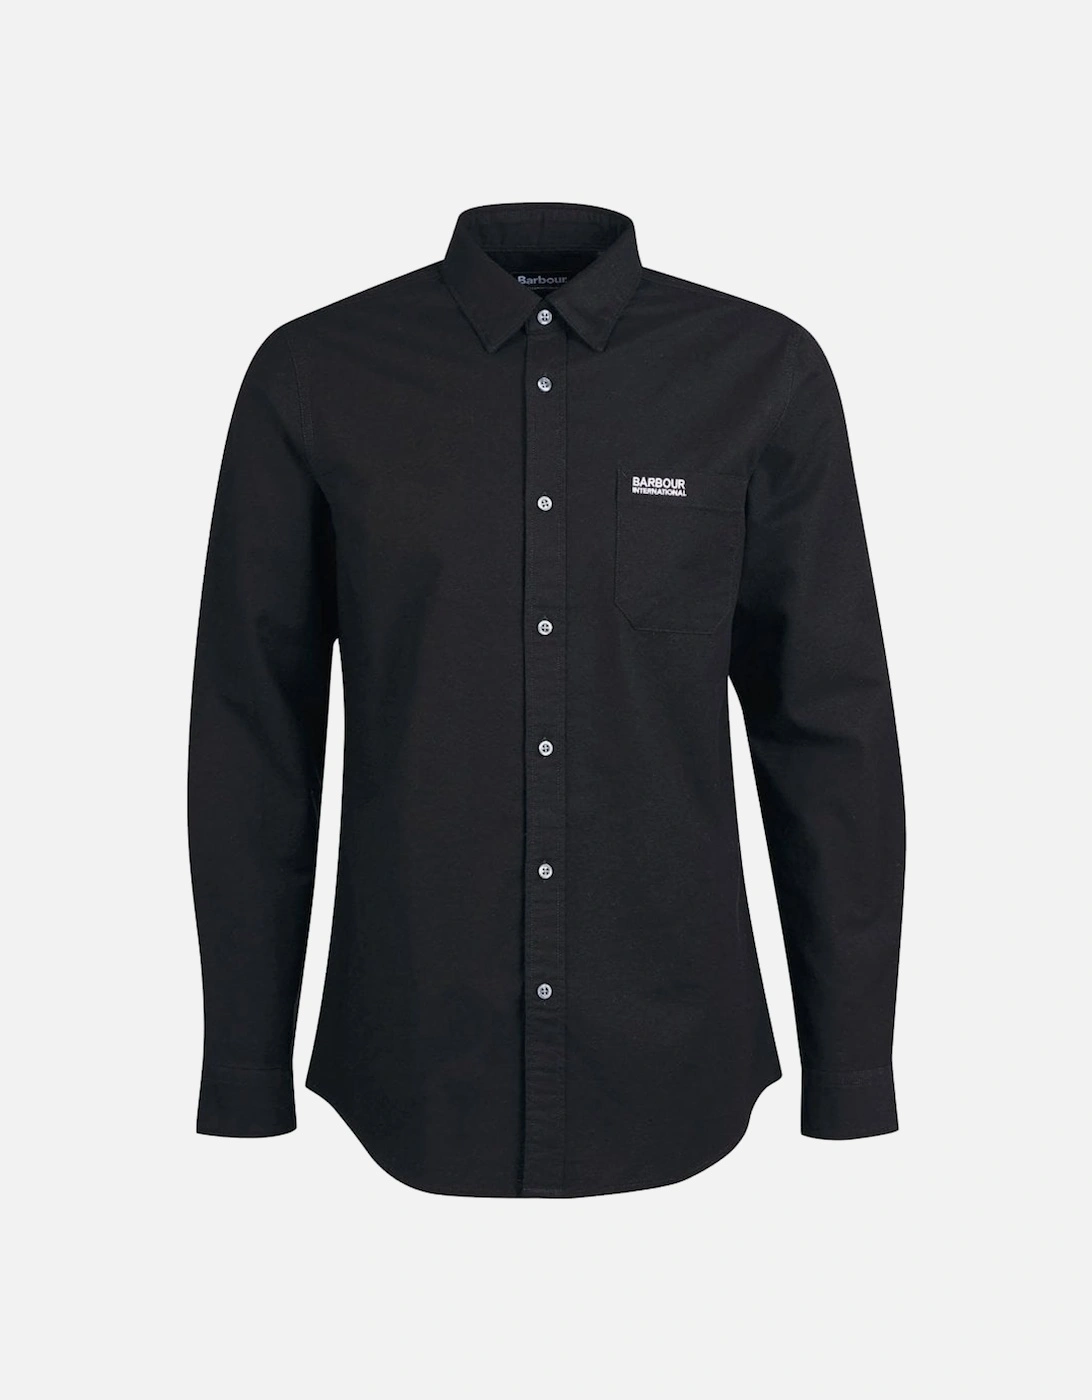 Men's black Kinetic Long Sleeved Shirt, 3 of 2